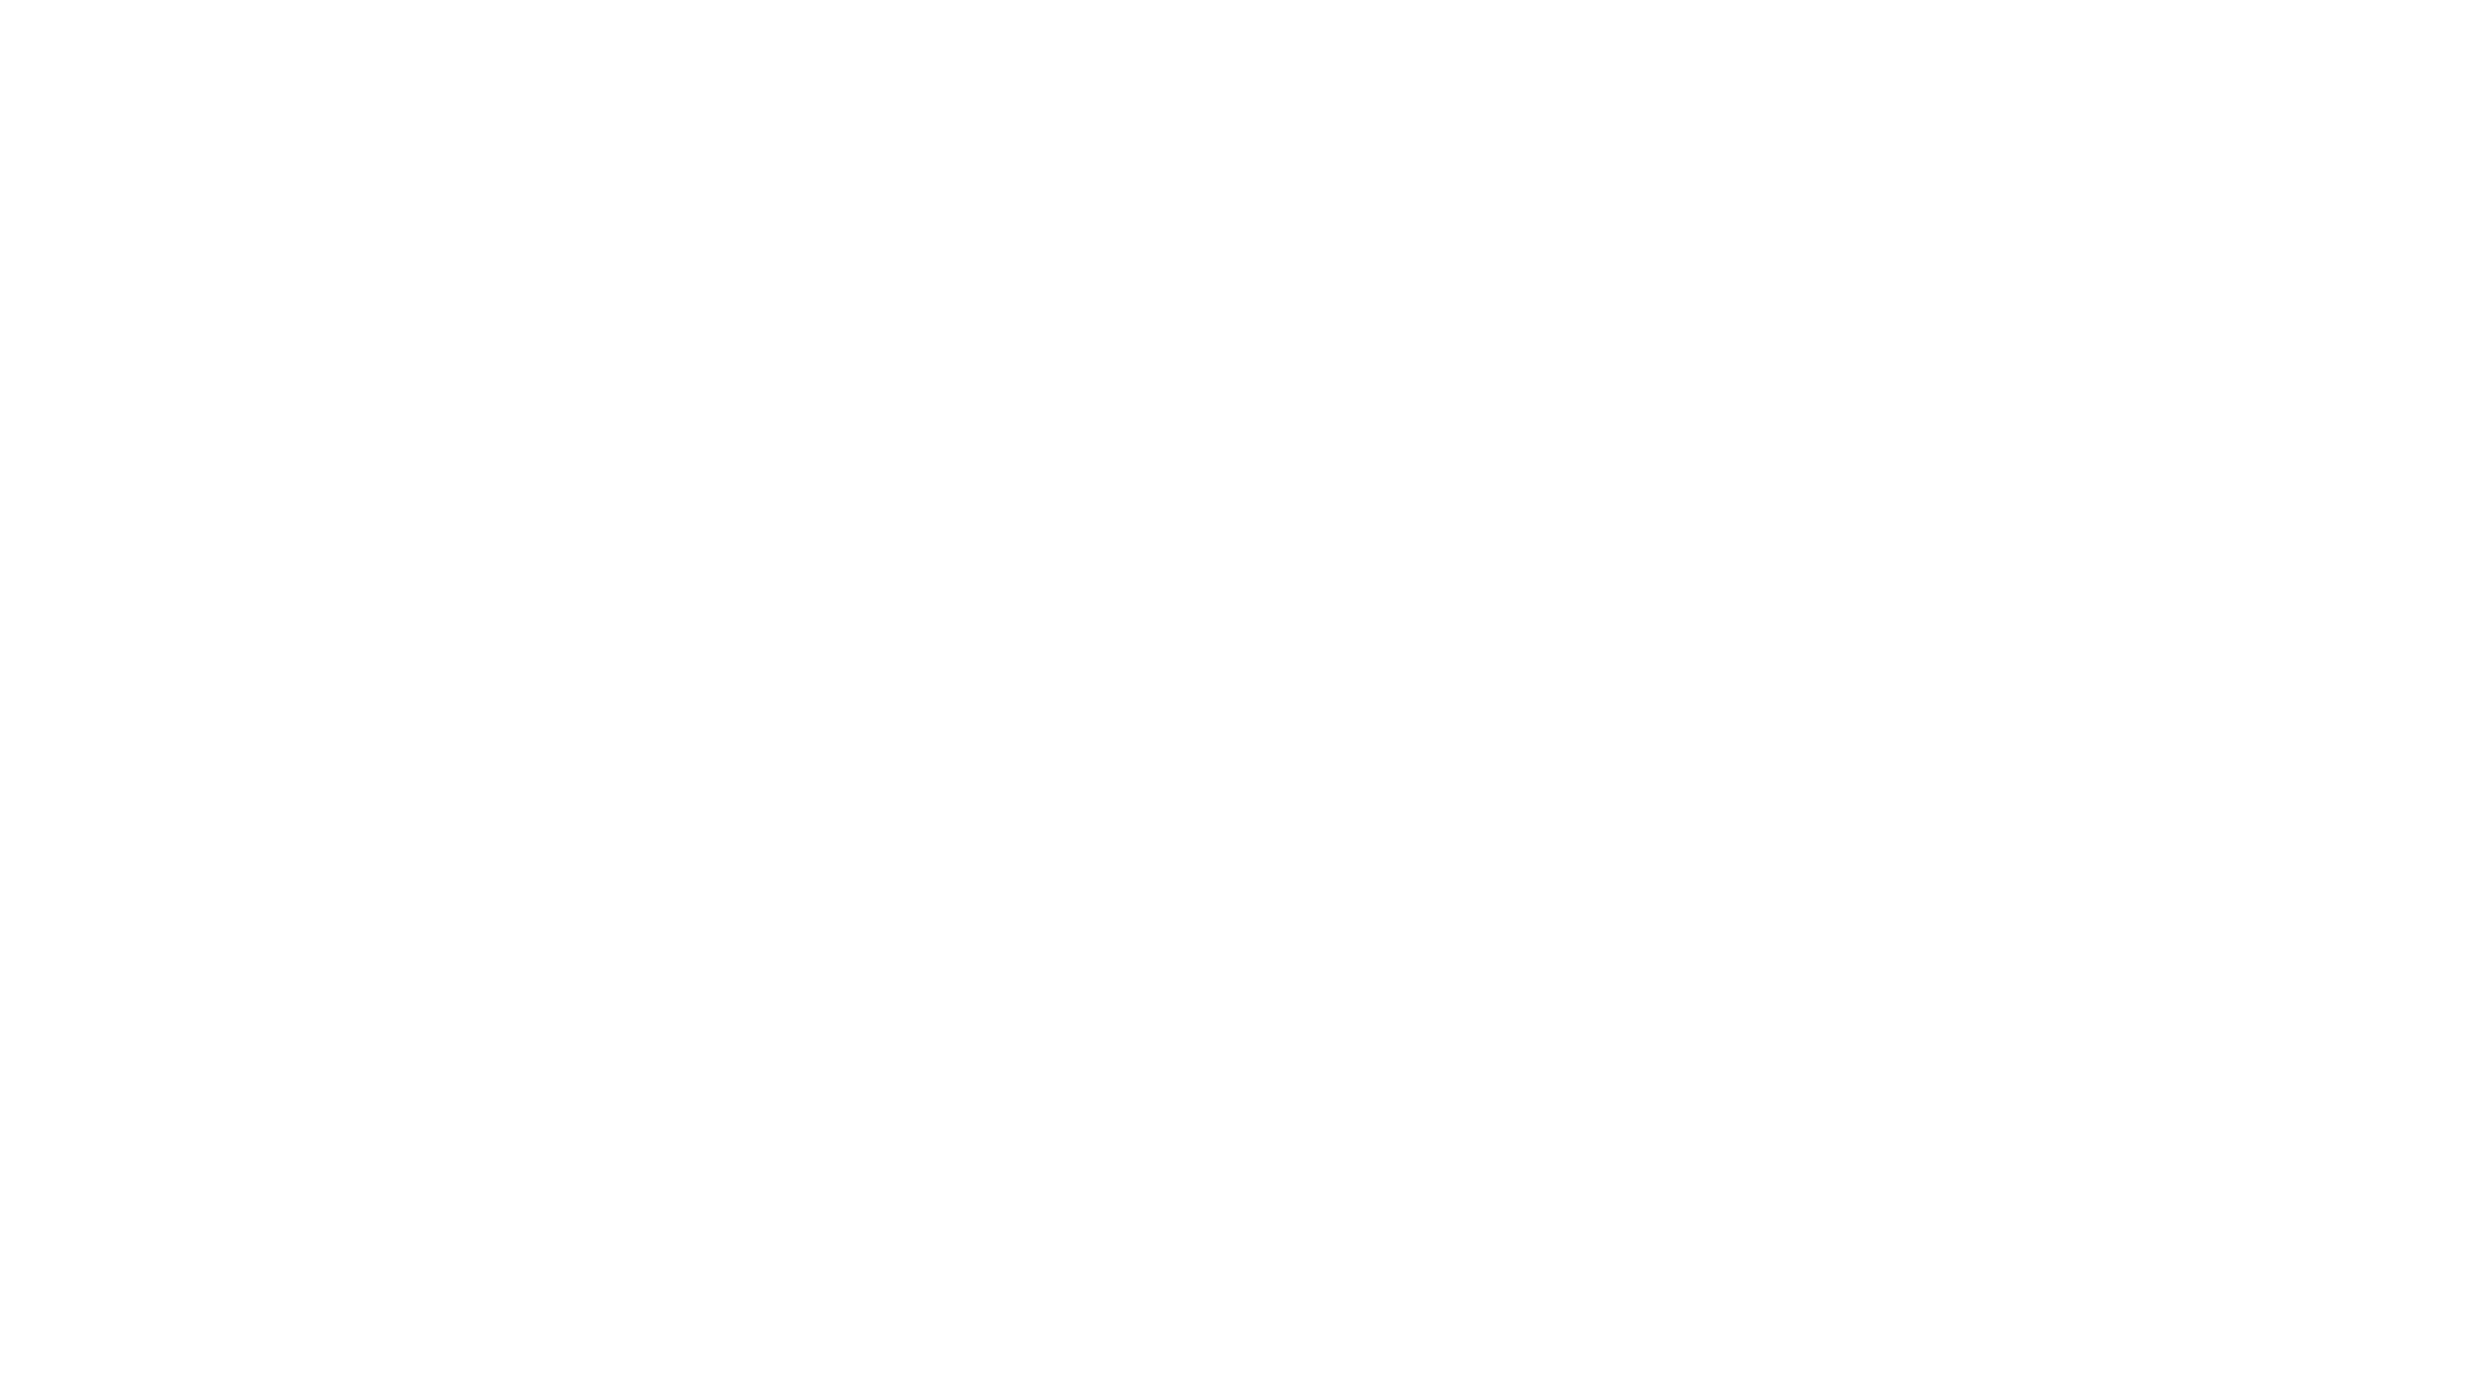 WASCHBETON